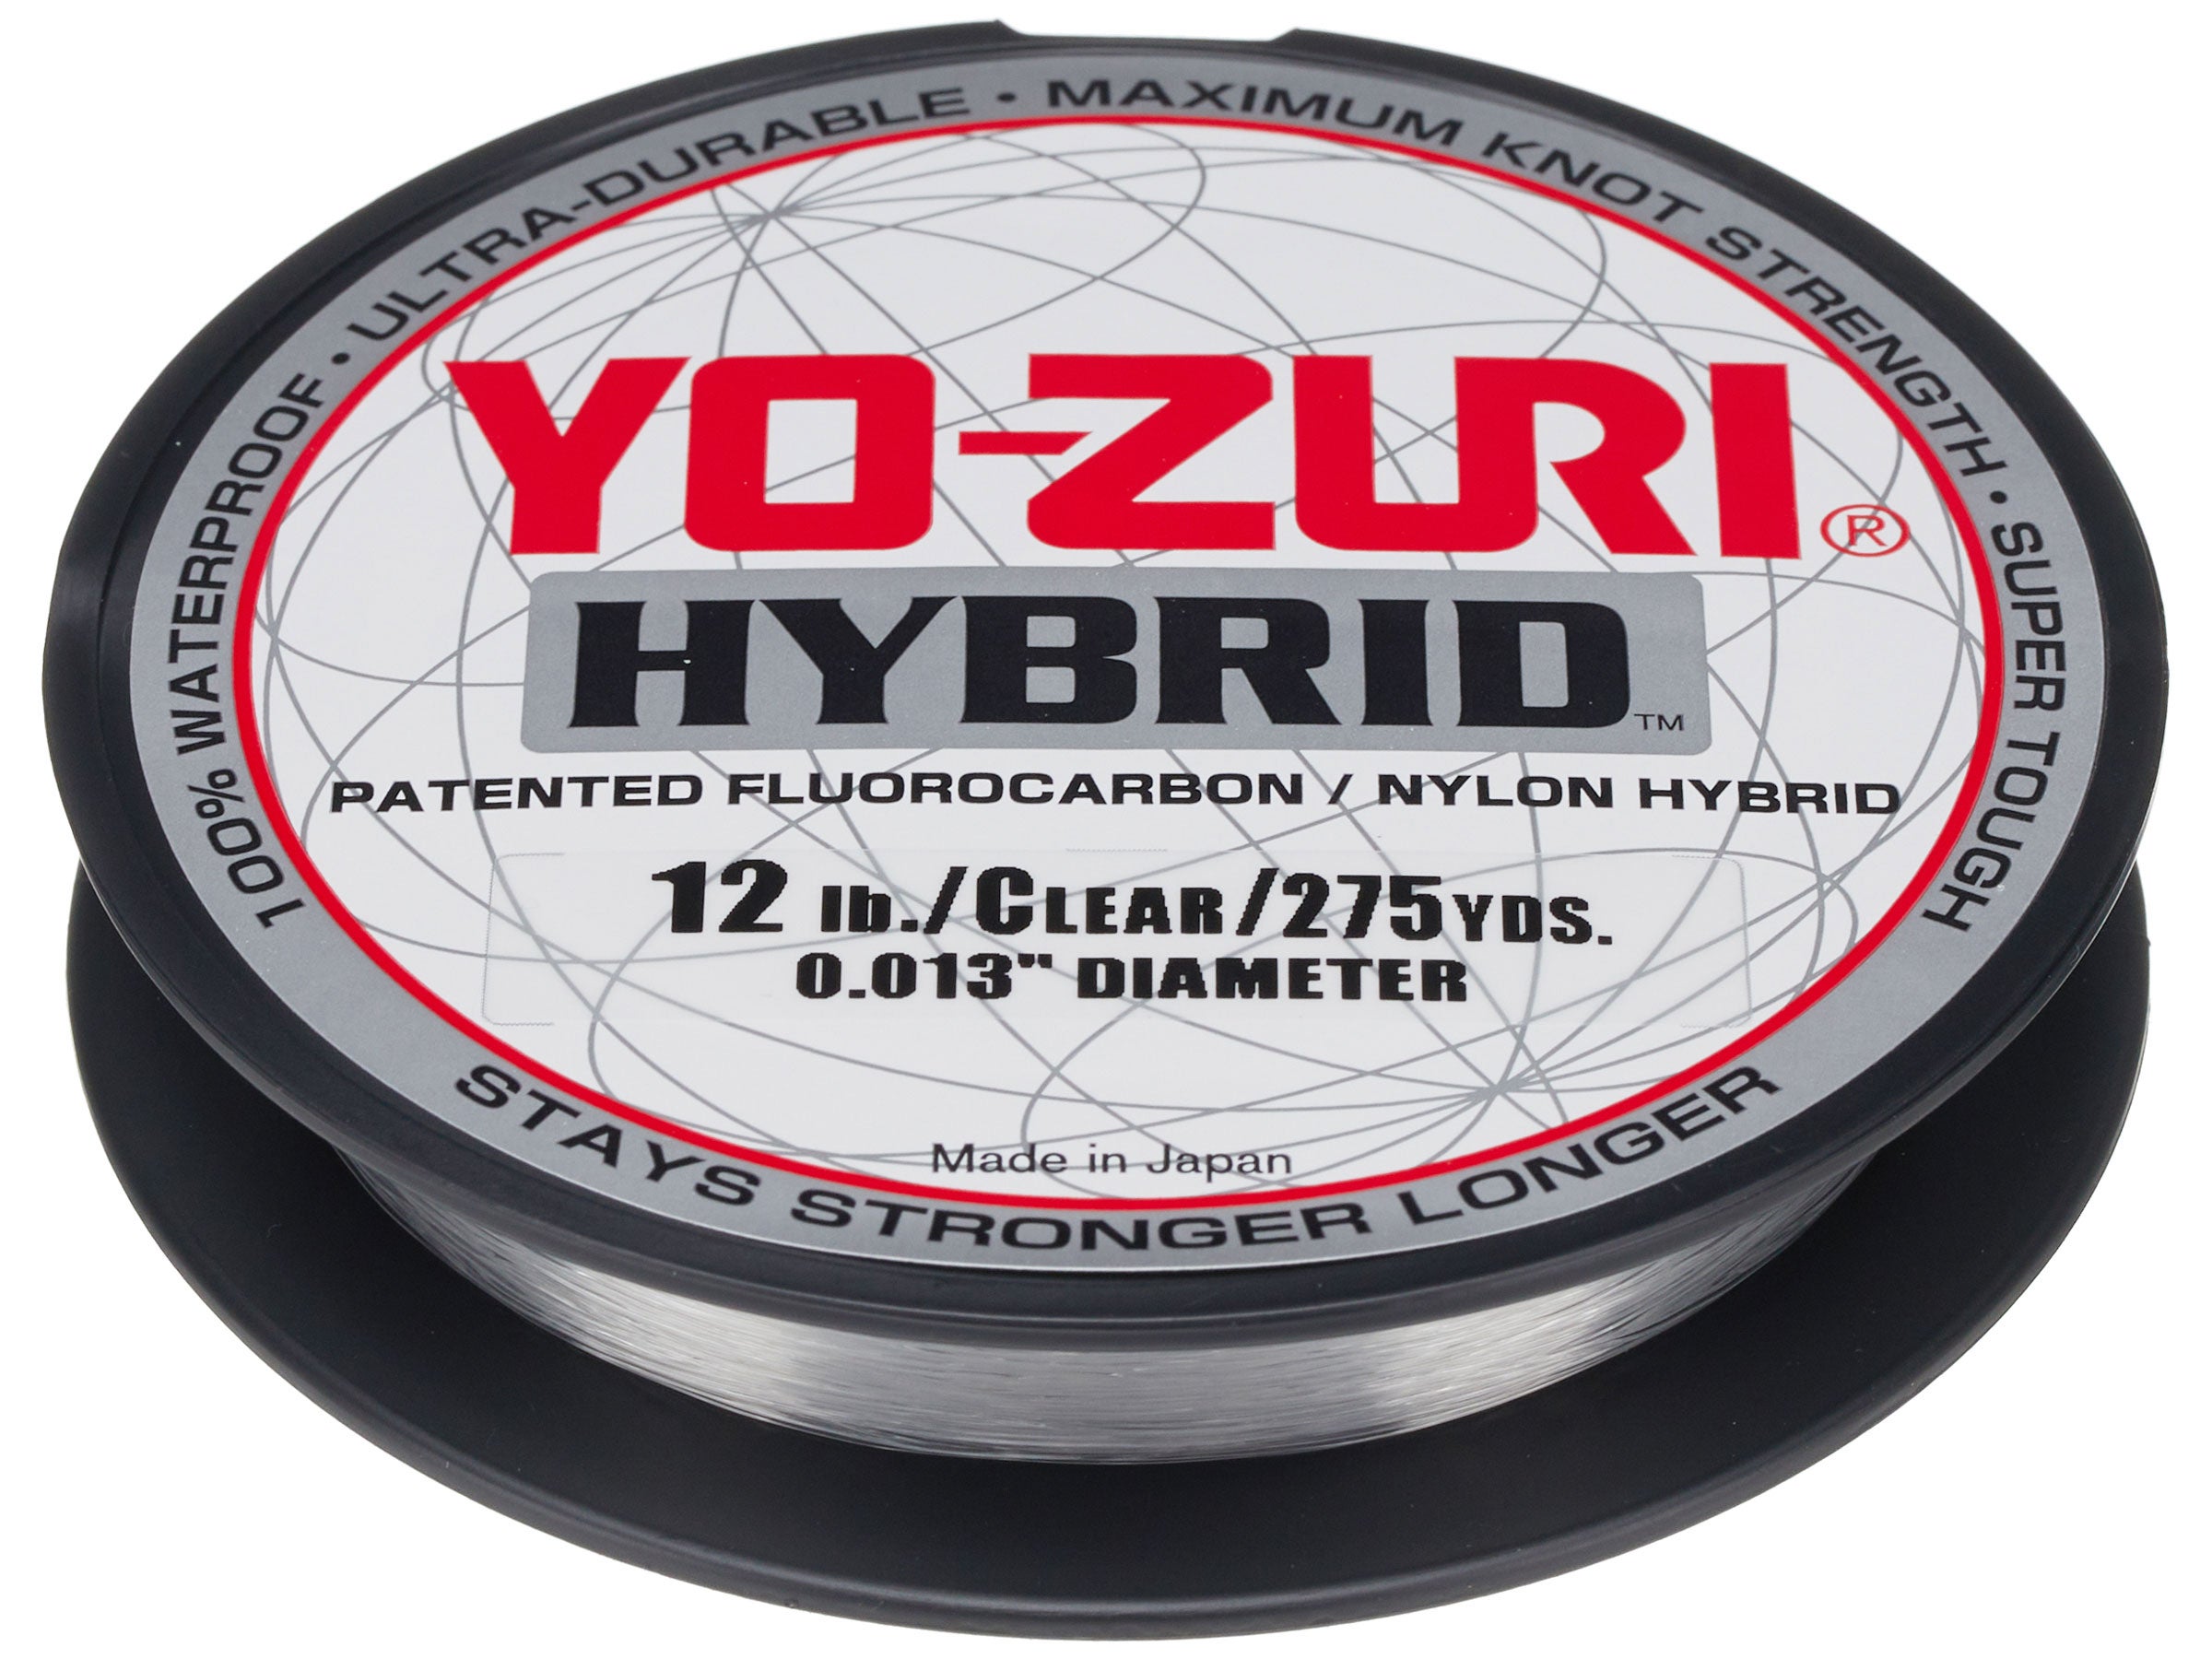 YO-ZURI HYBRID Fluorocarbon 20lb Line 2-600 Yard Rolls CLEAR NEW! 